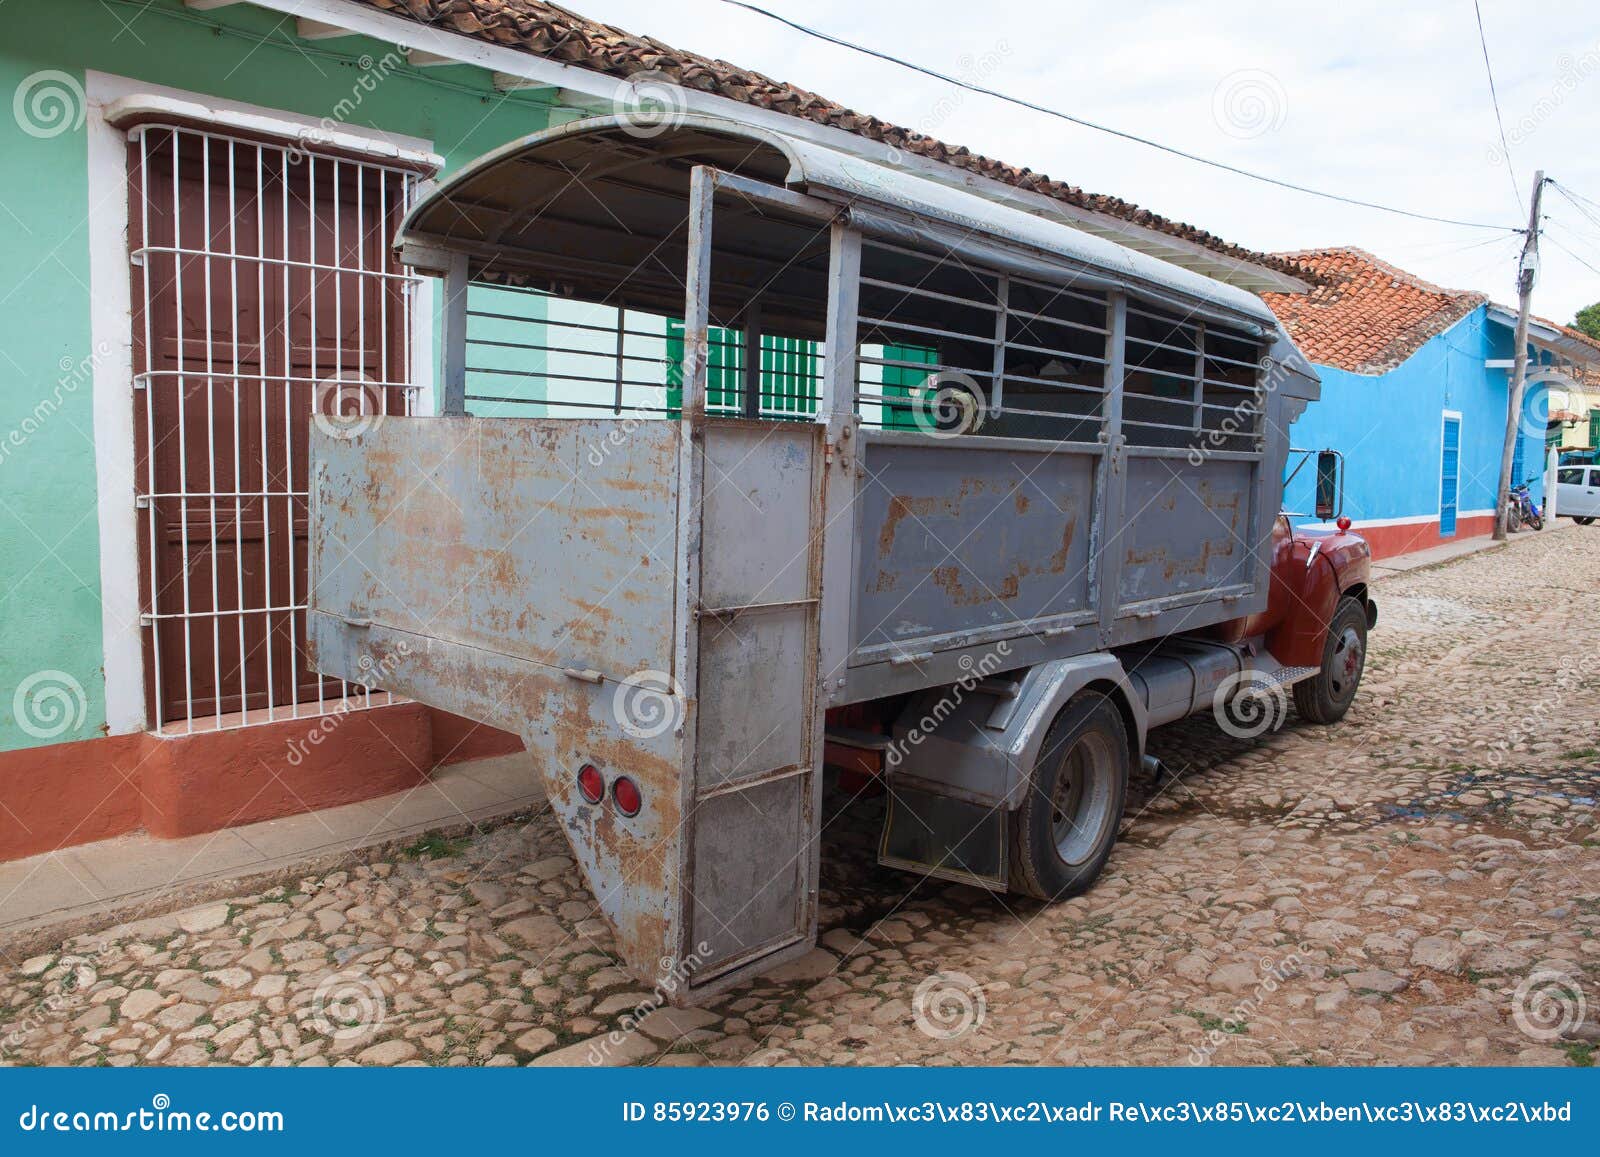 typical truck bus camion in trinidad,cuba. due to embargo cuba